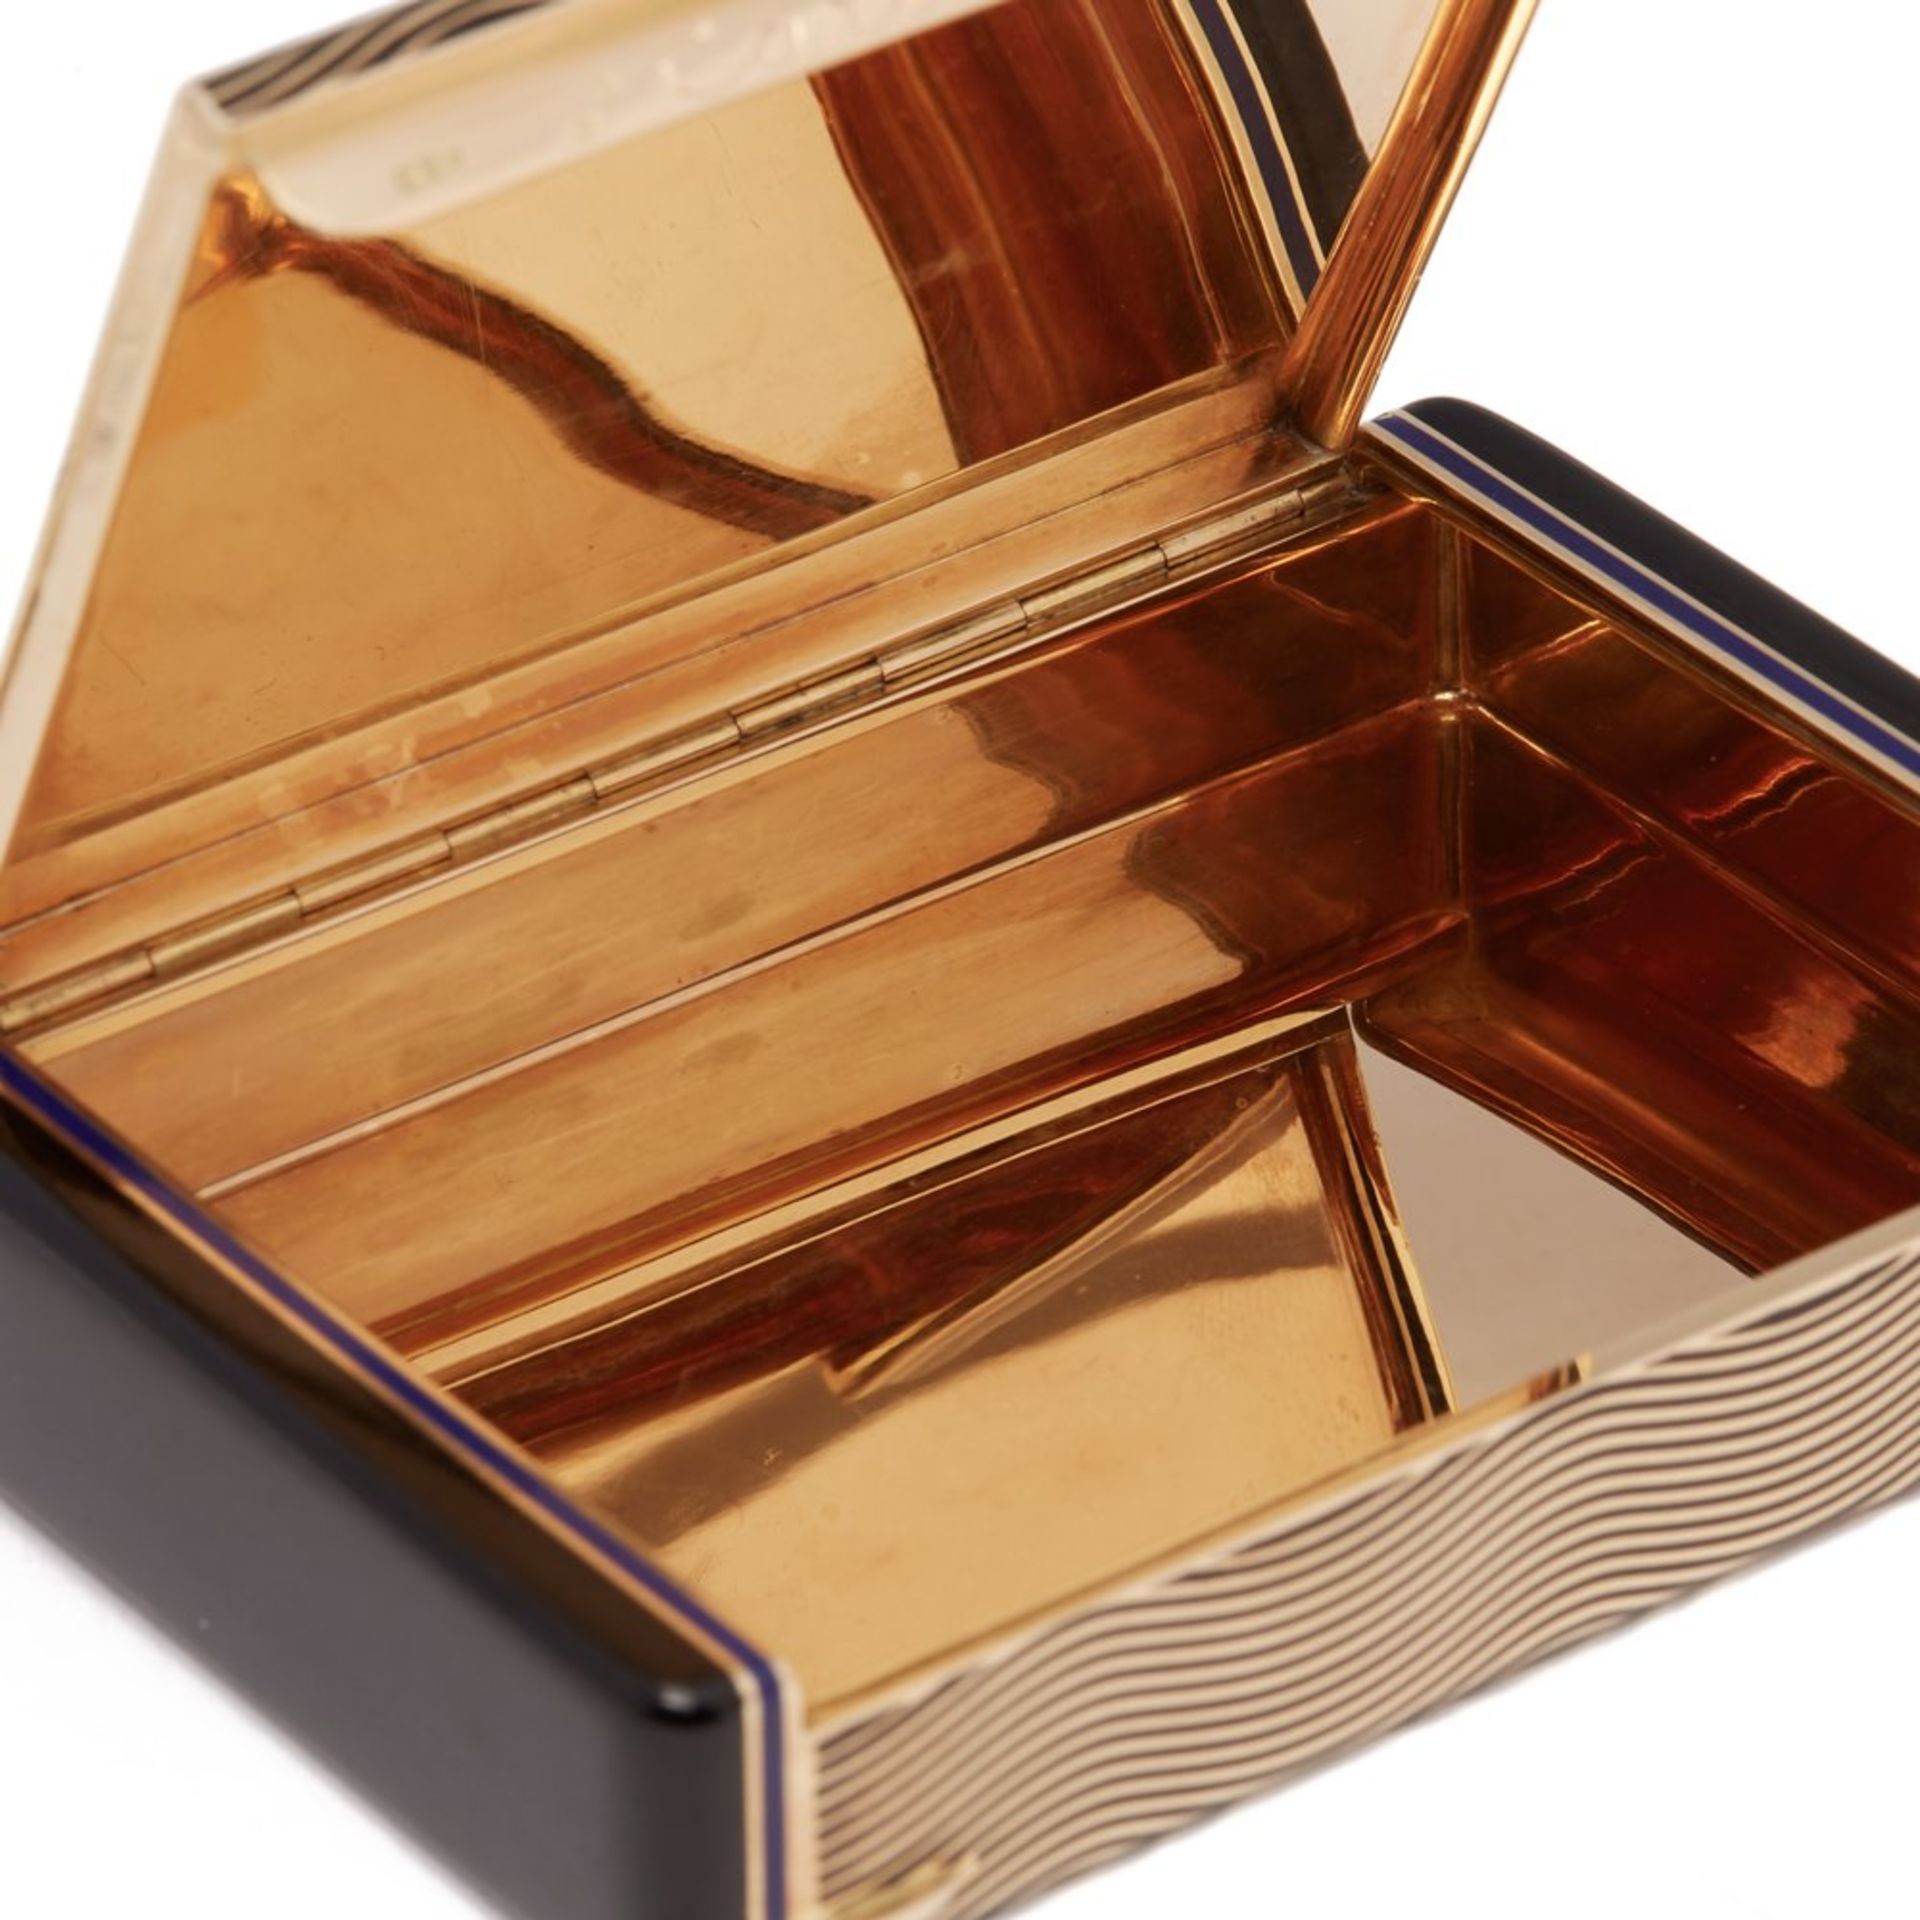 Cartier, 18k Gold & Enamel Art Deco Vanity Case - Image 14 of 14